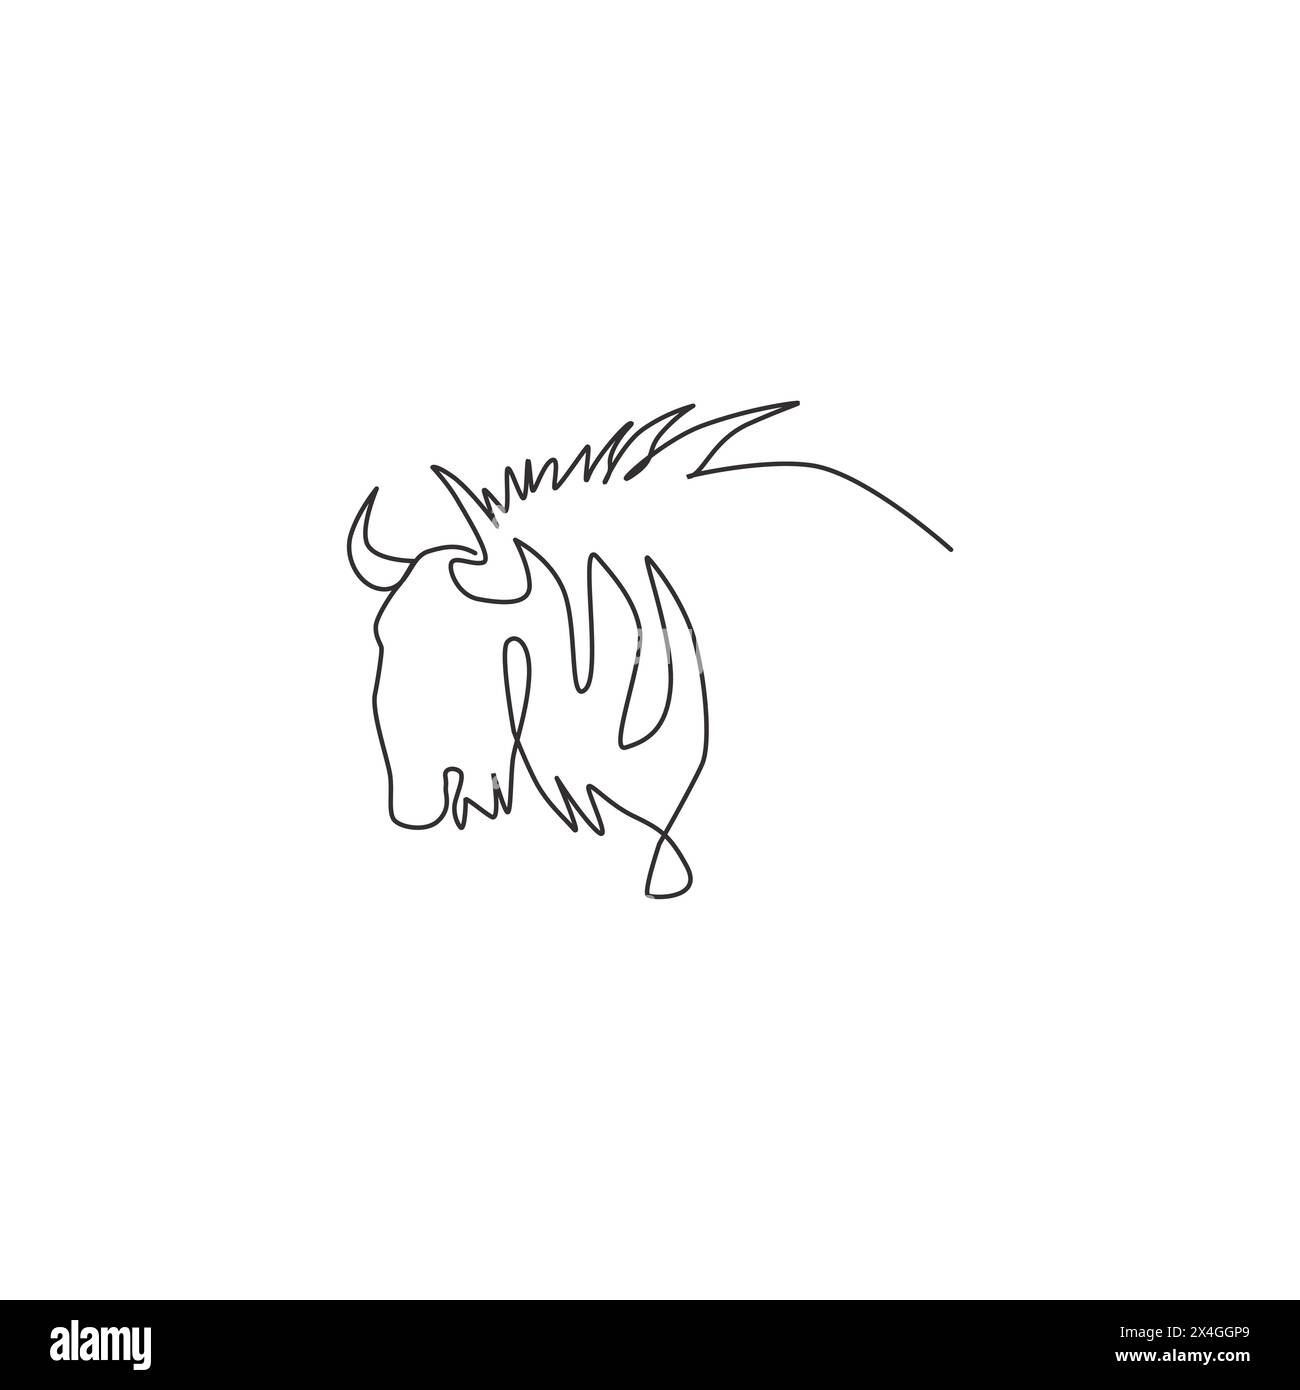 Un disegno continuo della testa degli GNU per l'identità del logo aziendale. Concetto di mascotte di mammiferi Big gnu per l'icona del parco nazionale di conservazione. Mod Illustrazione Vettoriale